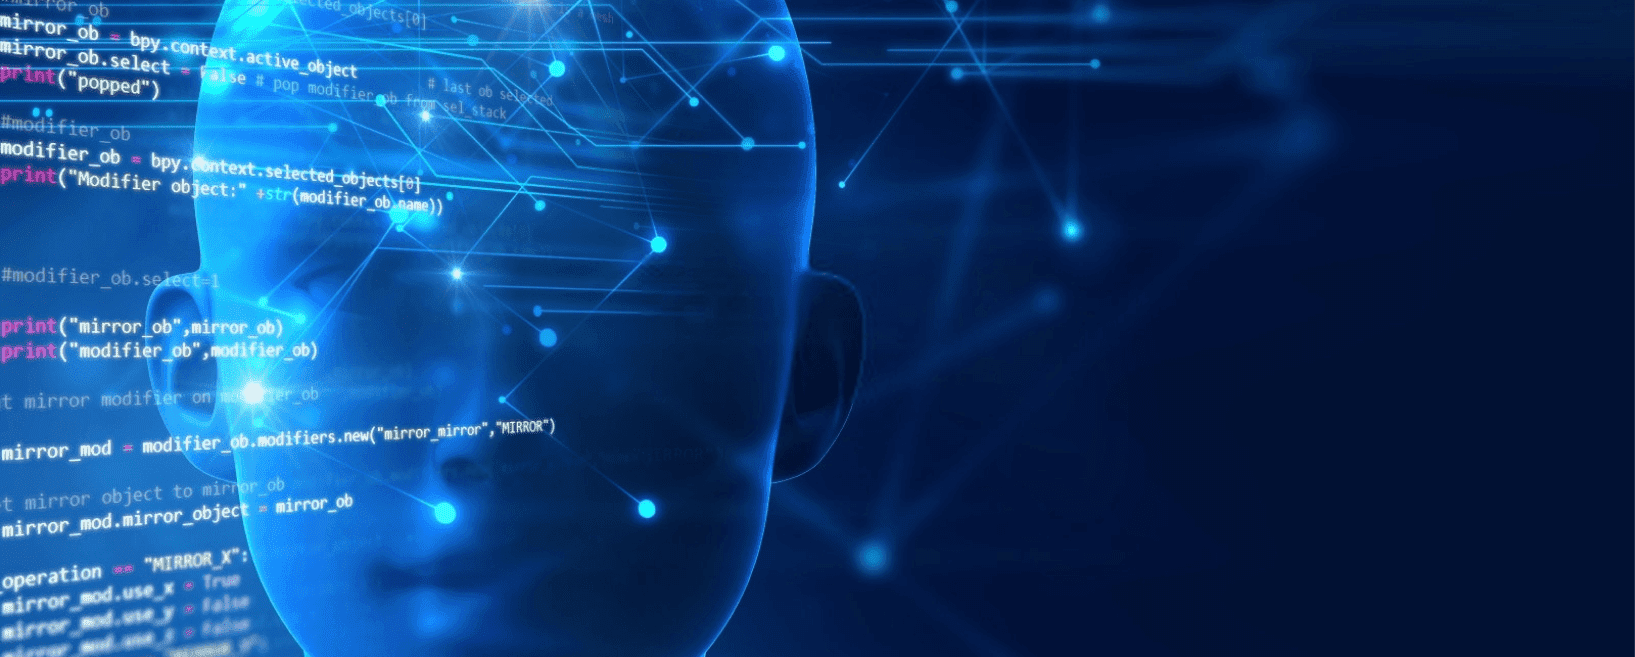 Um modelo de rosto humano azul se sobressalta por trás de várias linhas de código de programação, sugerindo a criação de um robô de Inteligência Artificial, data science machine learning.